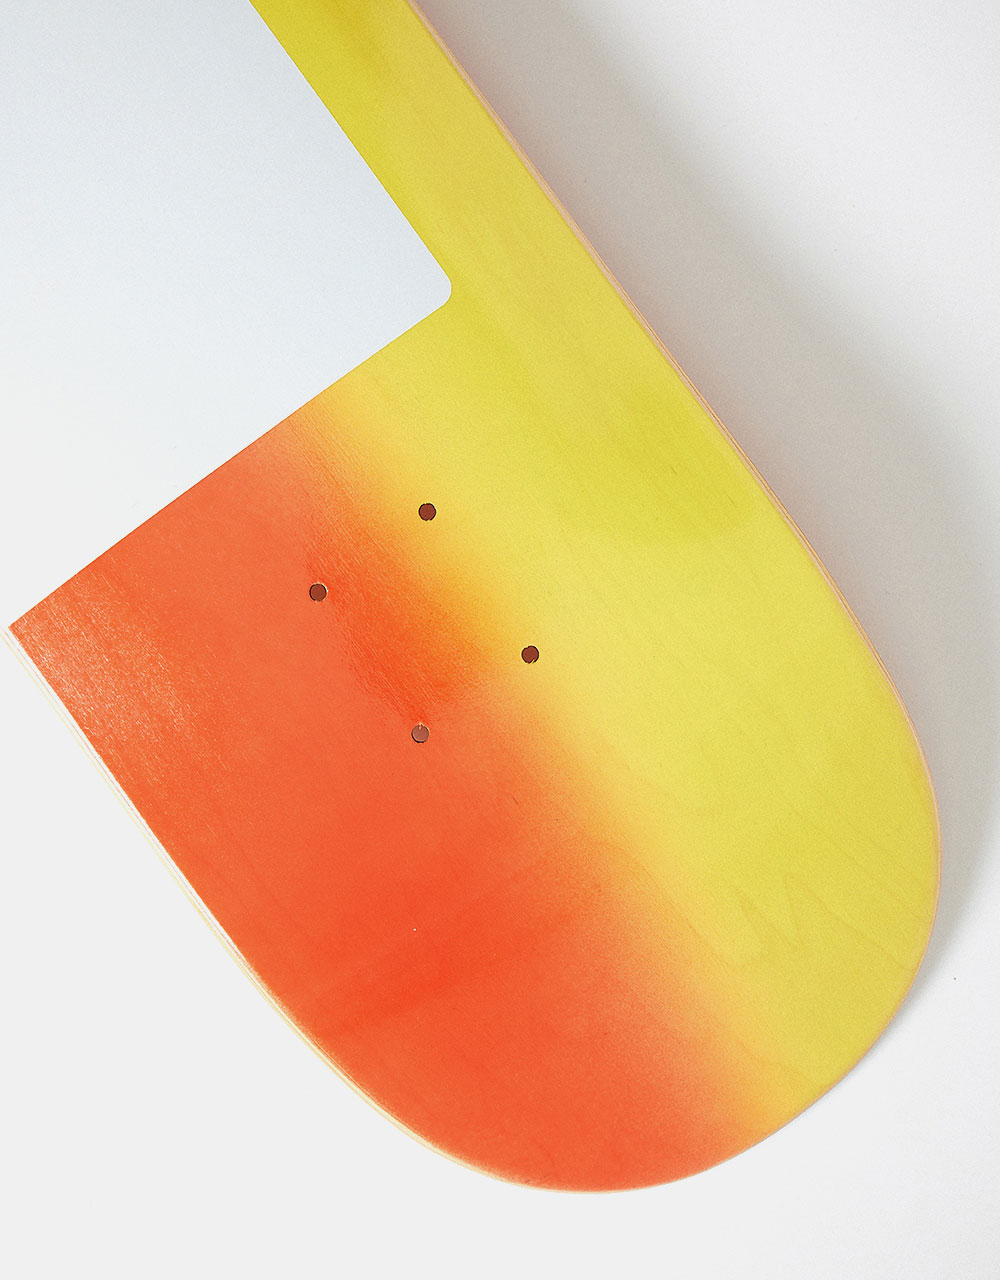 Quasi 'Proto 2' YOW Skateboard Deck - 8.5"